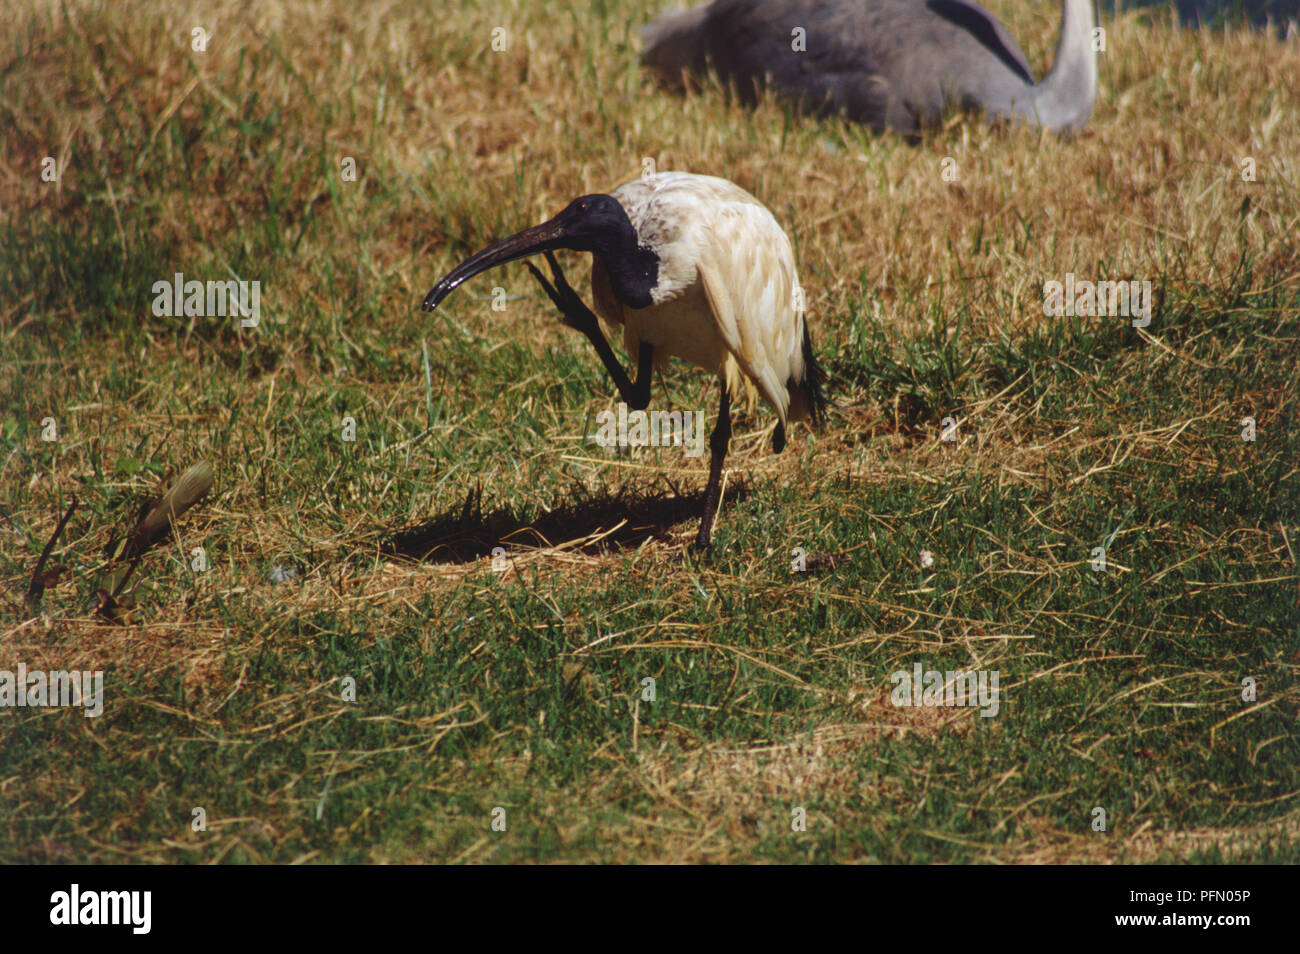 Ibis, braunes Gefieder, schwarz Hals und Kopf, auf einem Bein stehend in offenes Grasland, Kratzen ihren Gesetzentwurf mit seinen Fuß, Seitenansicht. Stockfoto